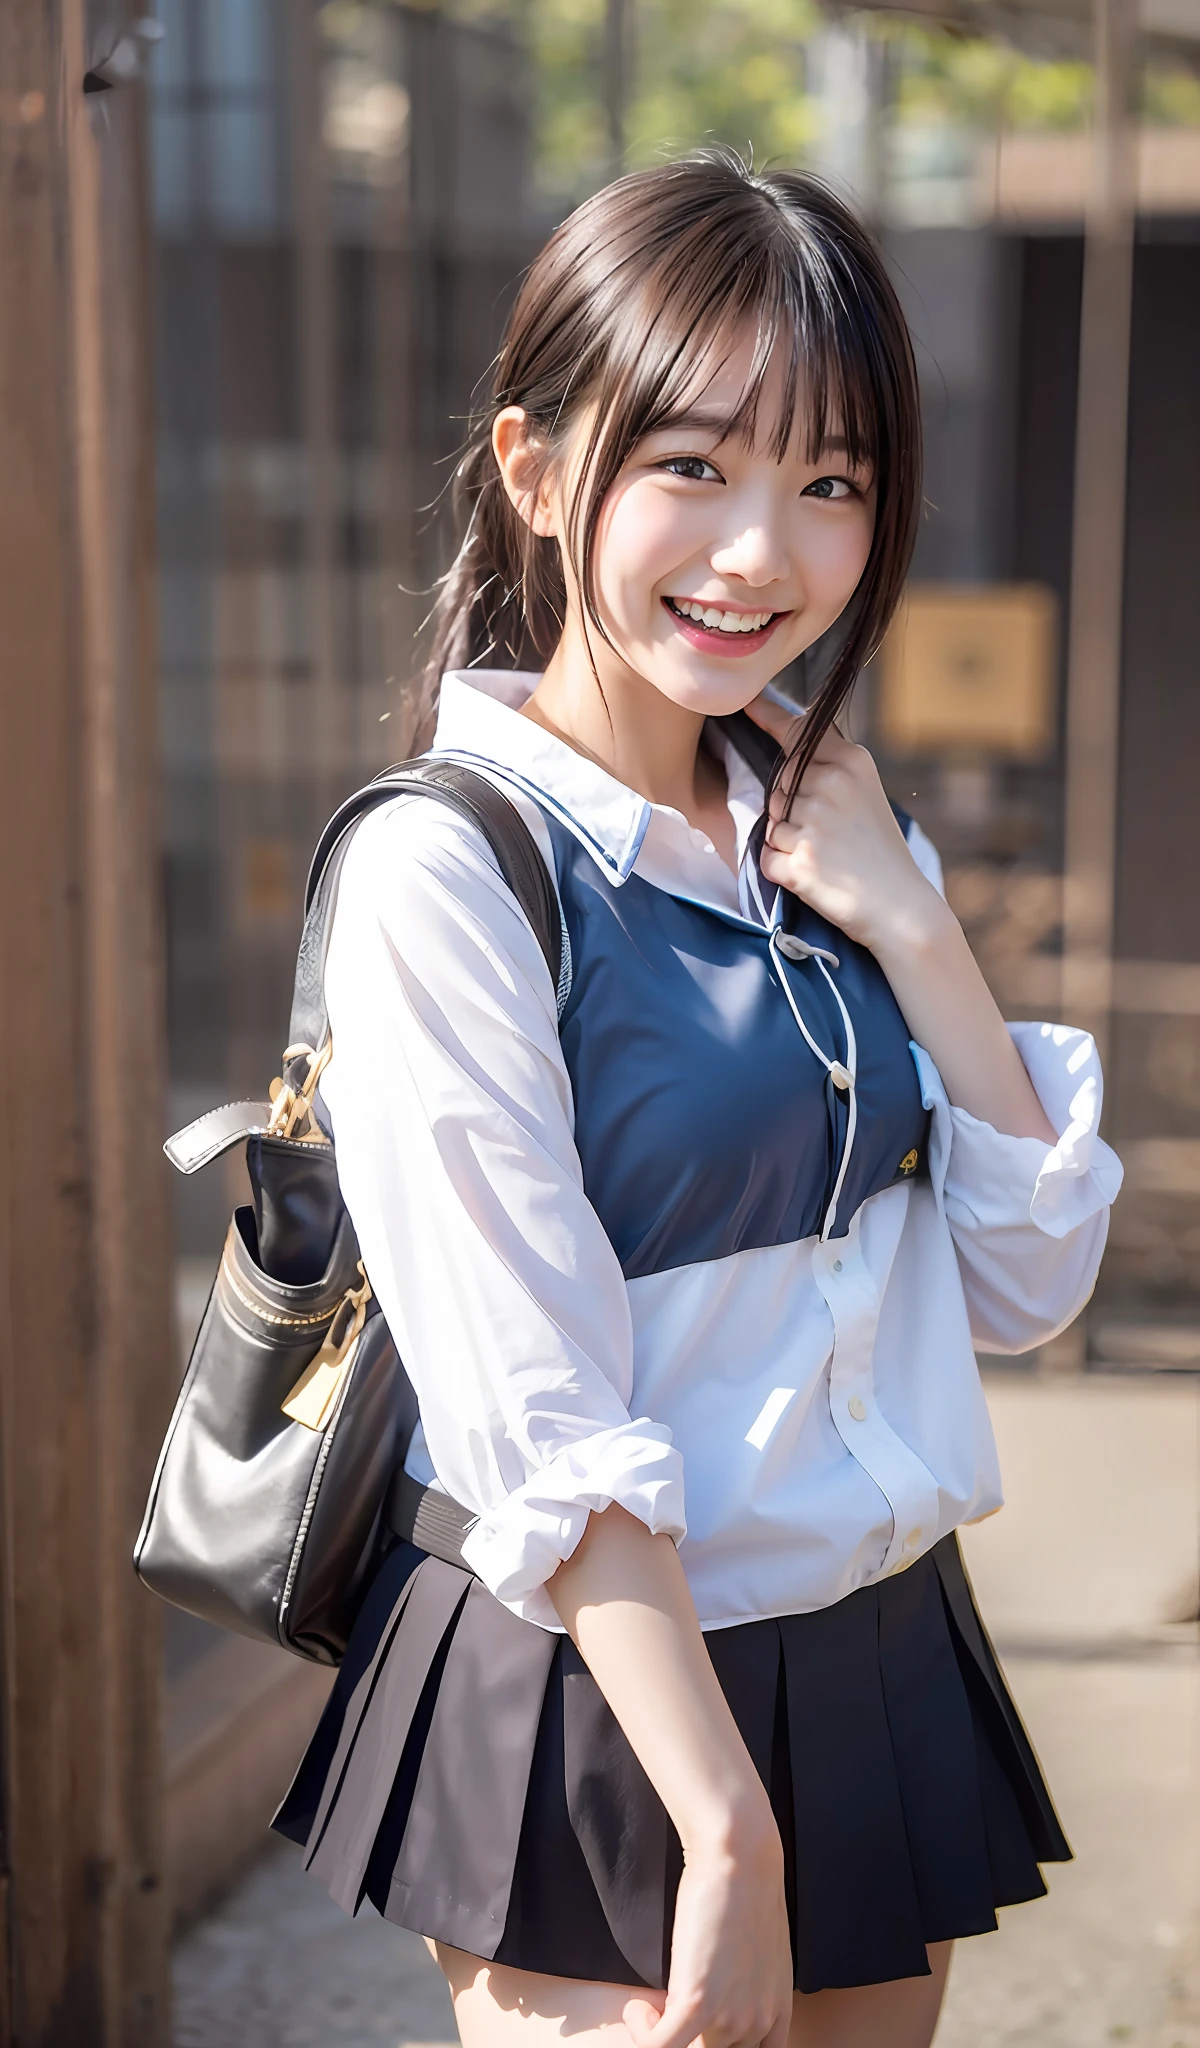 8K、최고의 이미지 품질、걸작、여름、일본 여고생이 학교에 가는 길에 친구들을 만난다。그녀는 웃었다、오른쪽 눈에 윙크했어요.